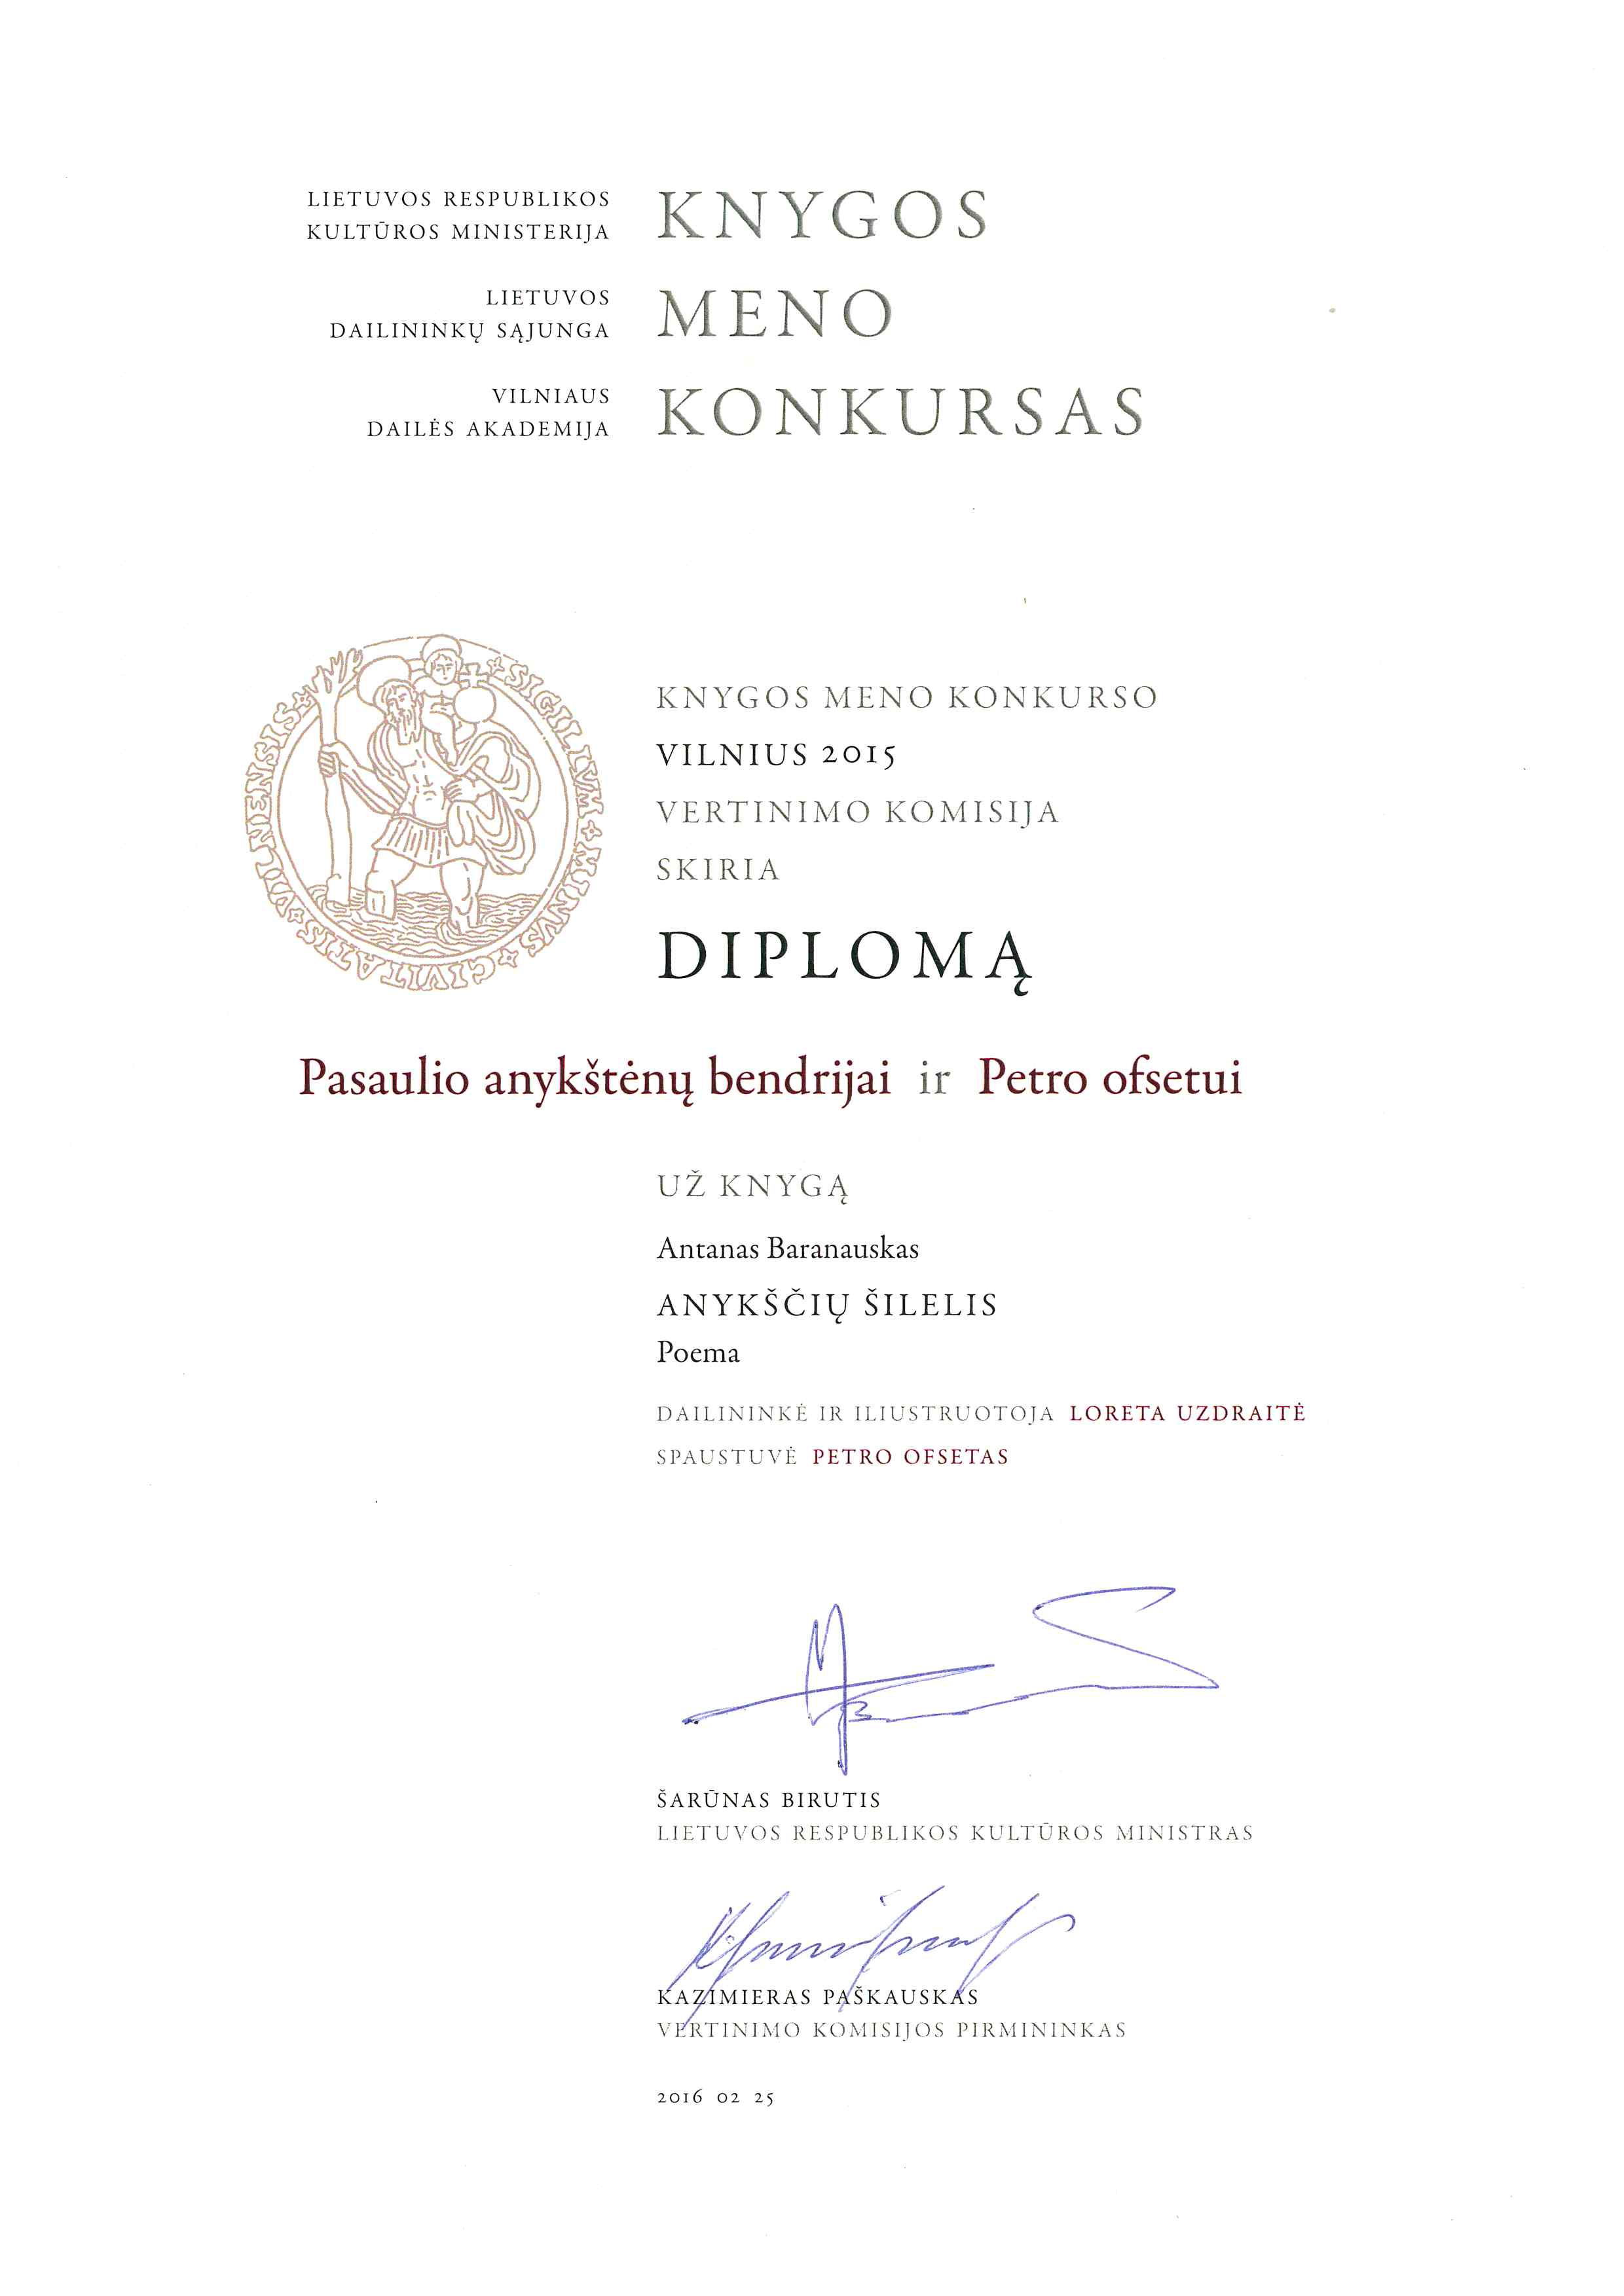 Diplomas Pasaulio anykštėnų bendrijai ir "Petro ofsetui".